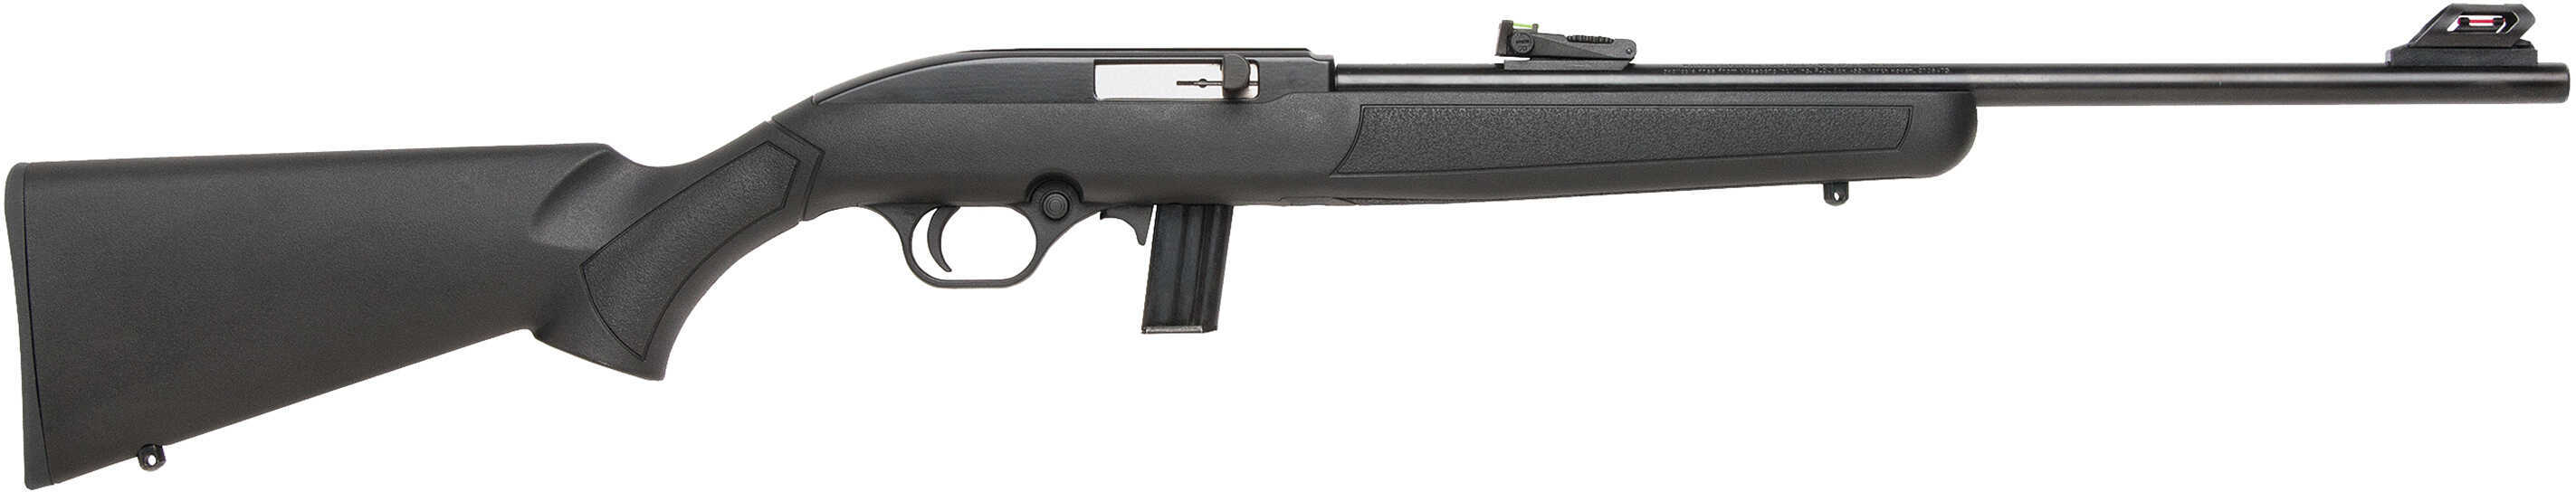 Mossberg 702 Plinkster Bantam Autoloading Rifle-img-1